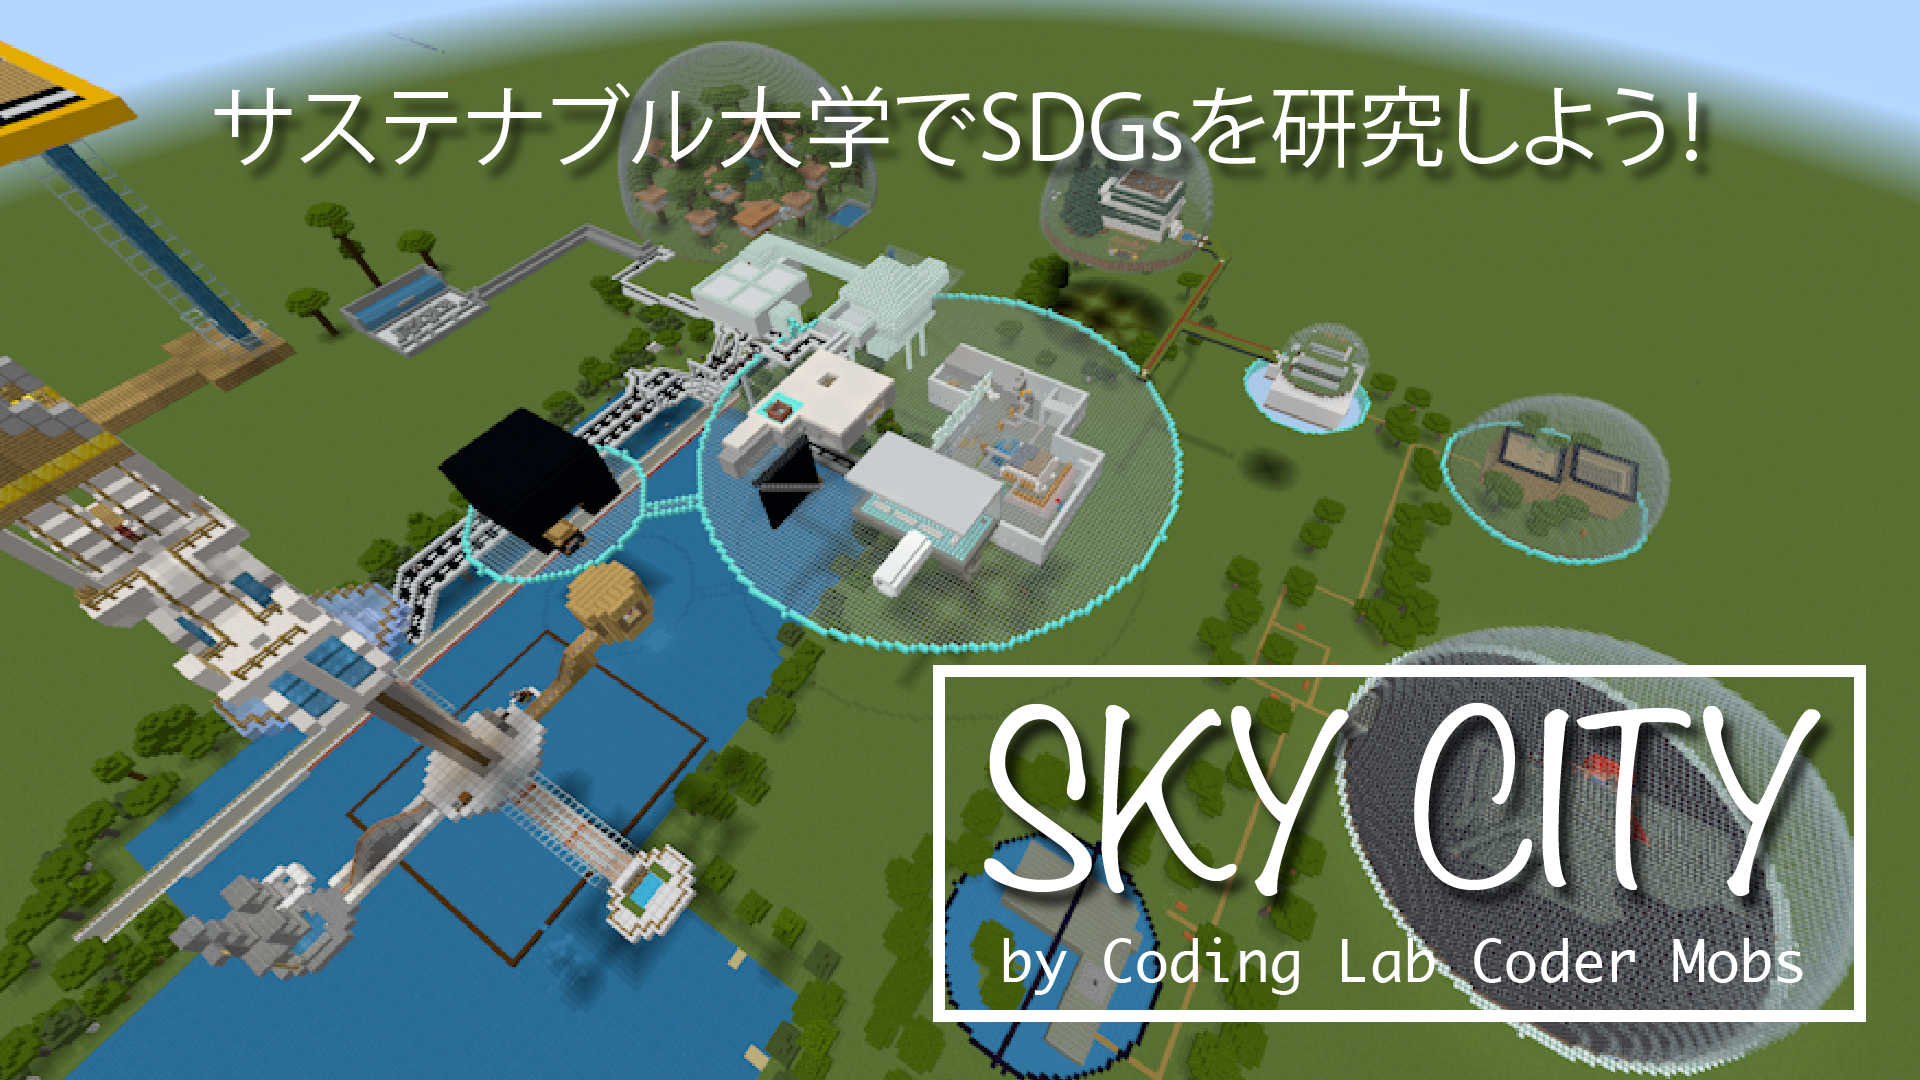 Sky City - サステナブル大学でSDGsを勉強・研究しよう!